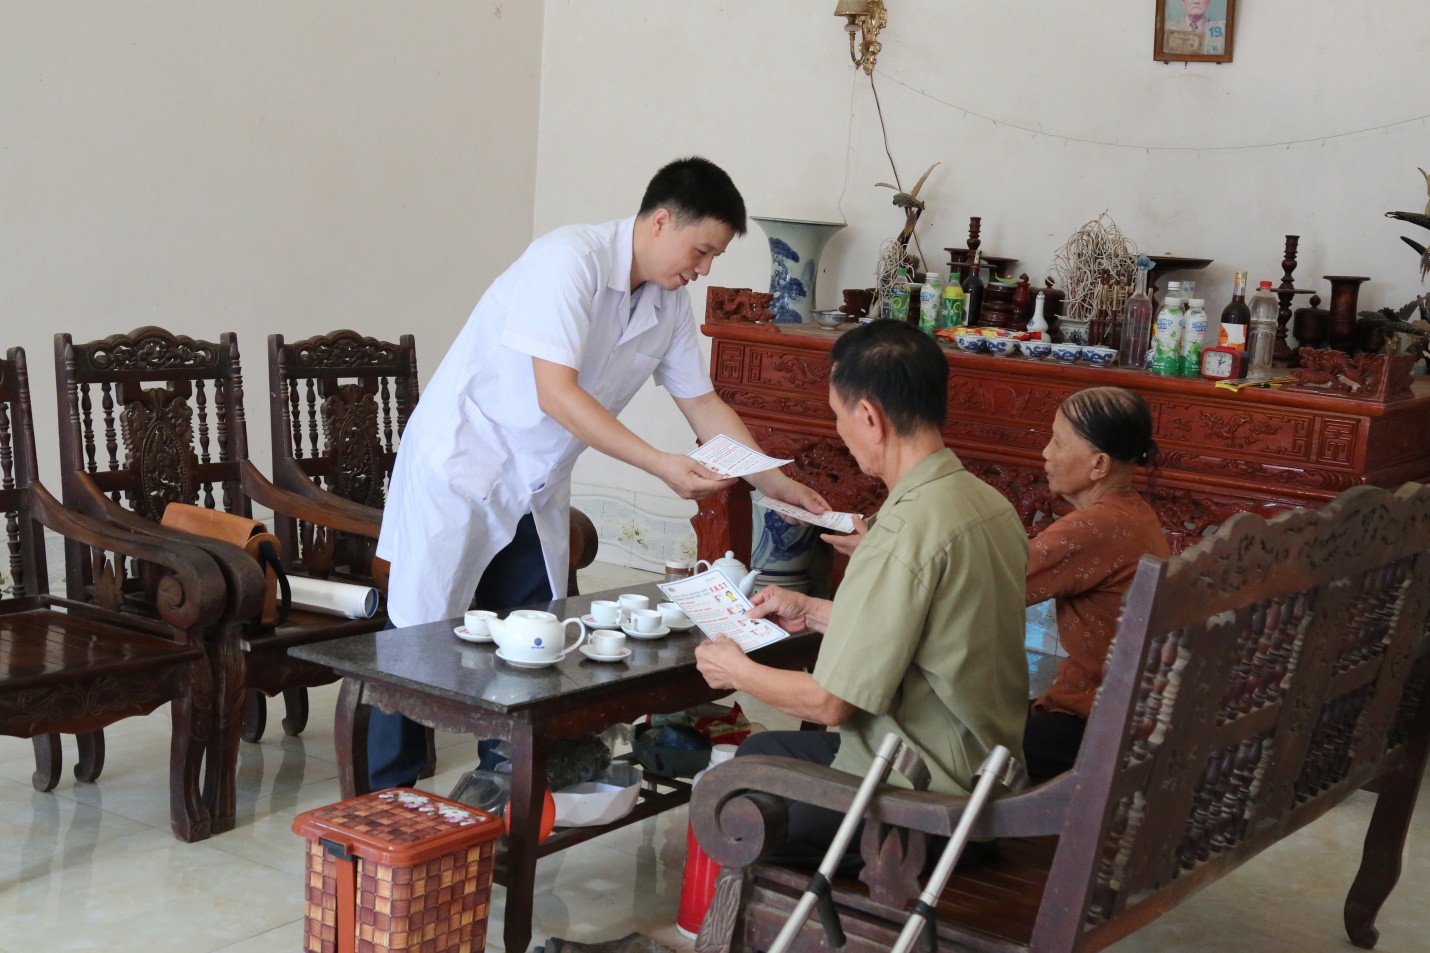 Cán bộ y tế xã Xuân Viên (huyện Yên Lập) tới thăm và hướng dẫn người dân khi phát hiện các dấu hiệu đột quỵ cần liên hệ cơ sở y tế gần nhất để được cứu chữa kịp thời.